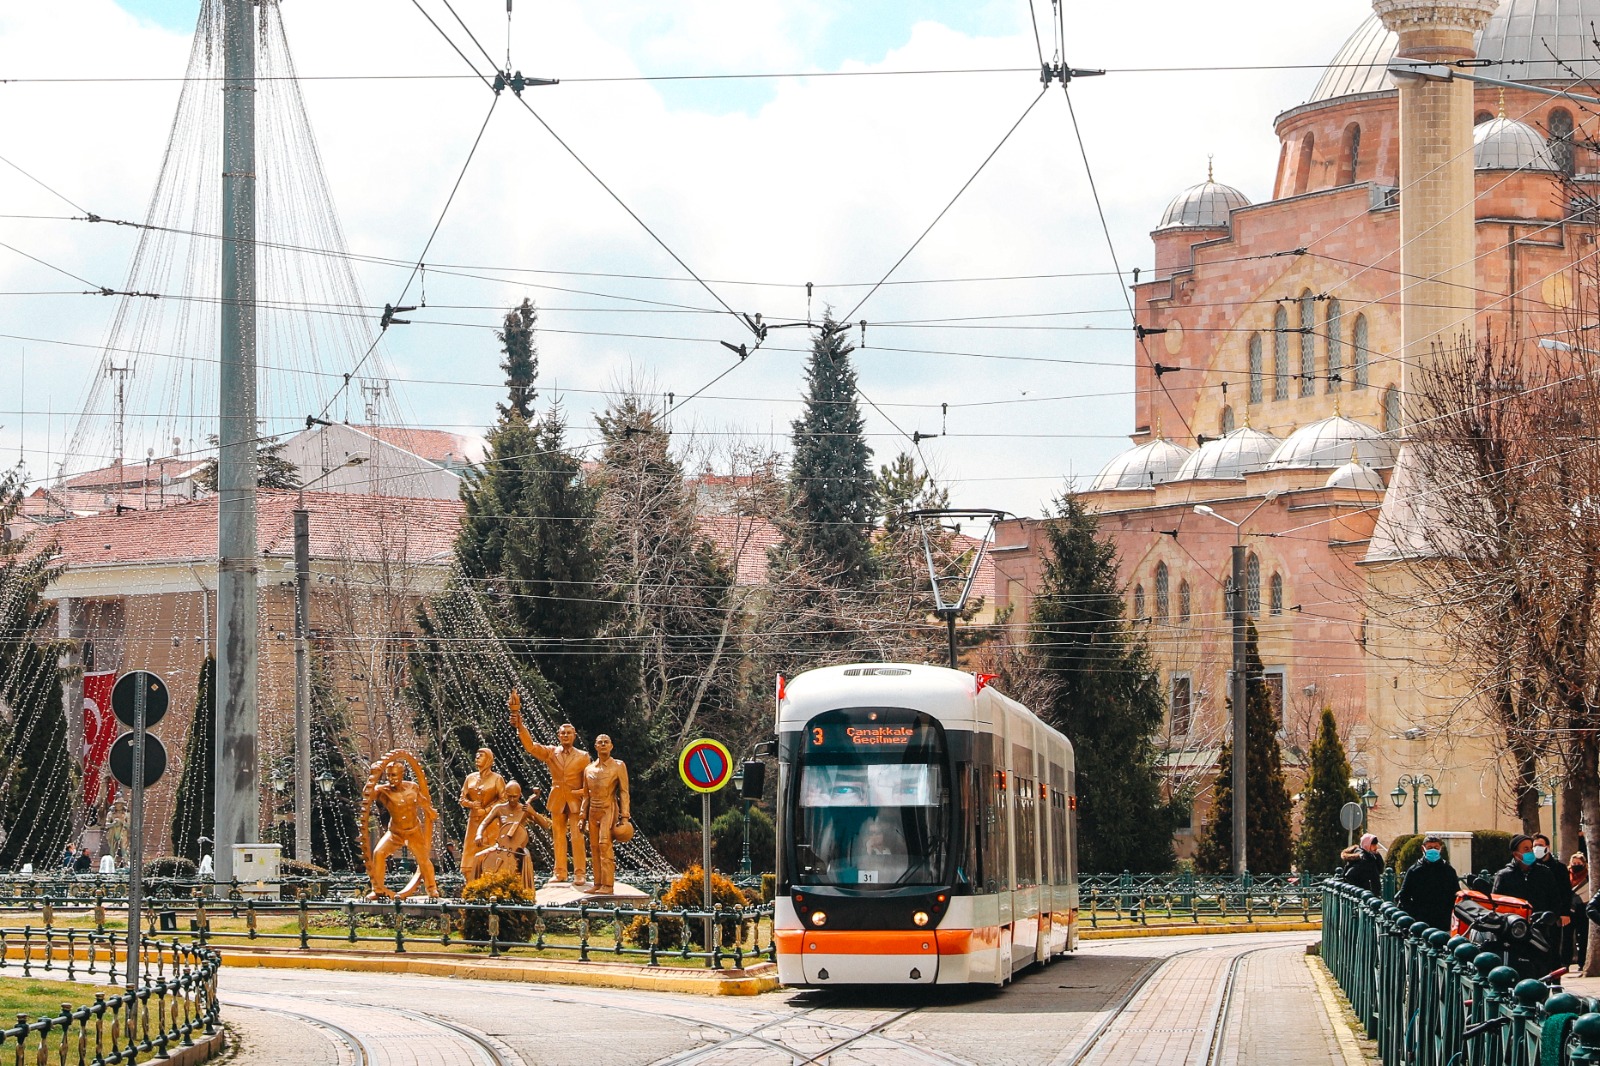 Özel günlerde tramvay ve otobüslerin yazılarında yaptığı düzenlemelerle dikkat çeken Eskişehir Büyükşehir Belediyesi, 18 Mart Şehitleri Anma Günü ve Çanakkale Deniz Zaferi’nin 107’nci yıl dönümünde Gazi Mustafa Kemal Atatürk’ün “Çanakkale Geçilmez” sözüne ve fotoğrafına tramvaylarında yer verdi. Ukrayna'daki savaş ile ilgili tramvaylara 'Yurtta Barış Dünyada Barış' yazılmasının ardından Instagram'da anonim bir hesap tarafından tramvayın gölgeliğine Atatürk'ün gözlerinin fotoğraf düzenleme uygulamasıyla eklenmesinden ilham alan Büyükşehir Belediyesi, ESTRAM iş birliğiyle tramvay güneşliklerine Atatürk'ün gözlerini yansıttı. 18 Mart Şehitleri Anma Günü ve Çanakkale Deniz Zaferi’nin 107’nci yıl dönümünde 20 tramvayda ilk kez denenen uygulama, vatandaşların da büyük beğenisini topladı. 18 Mart Cuma günü tramvaylardaki yeni uygulama ile karşılaşan vatandaşlar, “Bugün dışarıya çıktığımızda Gazi Mustafa Kemal Atatürk’ün tramvaylarımızdan bizlere bakması, bizleri çok duygulandırdı. Ülkemizin kurtuluşu için verilen büyük mücadeleleri, askerlerimizi bizlere bir kez daha hatırlattı. Çocuklarımız, gençlerimiz tramvaylarda yer alan Mustafa Kemal’in o derin bakışlarından O’nun ülke sevgisini, milli mücadelesini ve fikirlerini anlayarak büyüyeceklerdir. Başta Mustafa Kemal Atatürk ve silah arkadaşları olmak üzere tüm şehitlerimizin ruhları şad olsun” sözleriyle duygularını ifade ettiler.